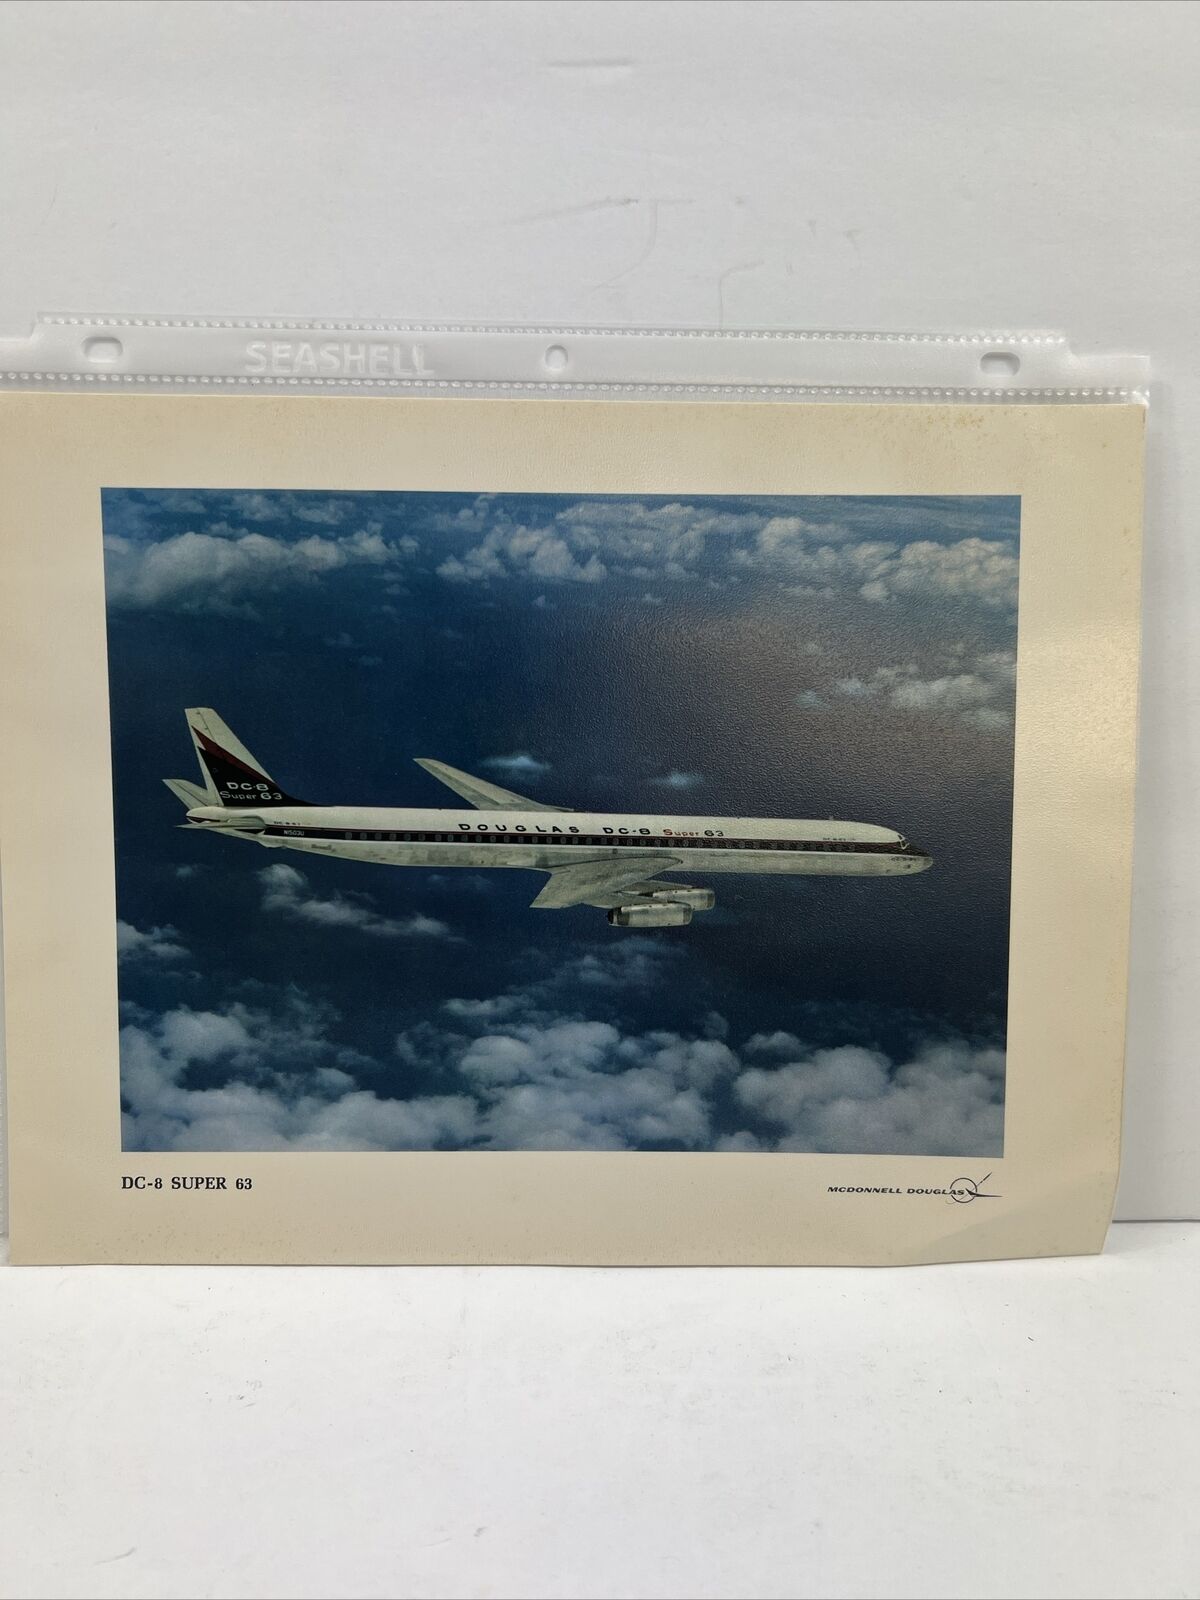 McDonnell Douglas’s DC-8 Super 63 11x8.5 Picture/Print. Description On Back